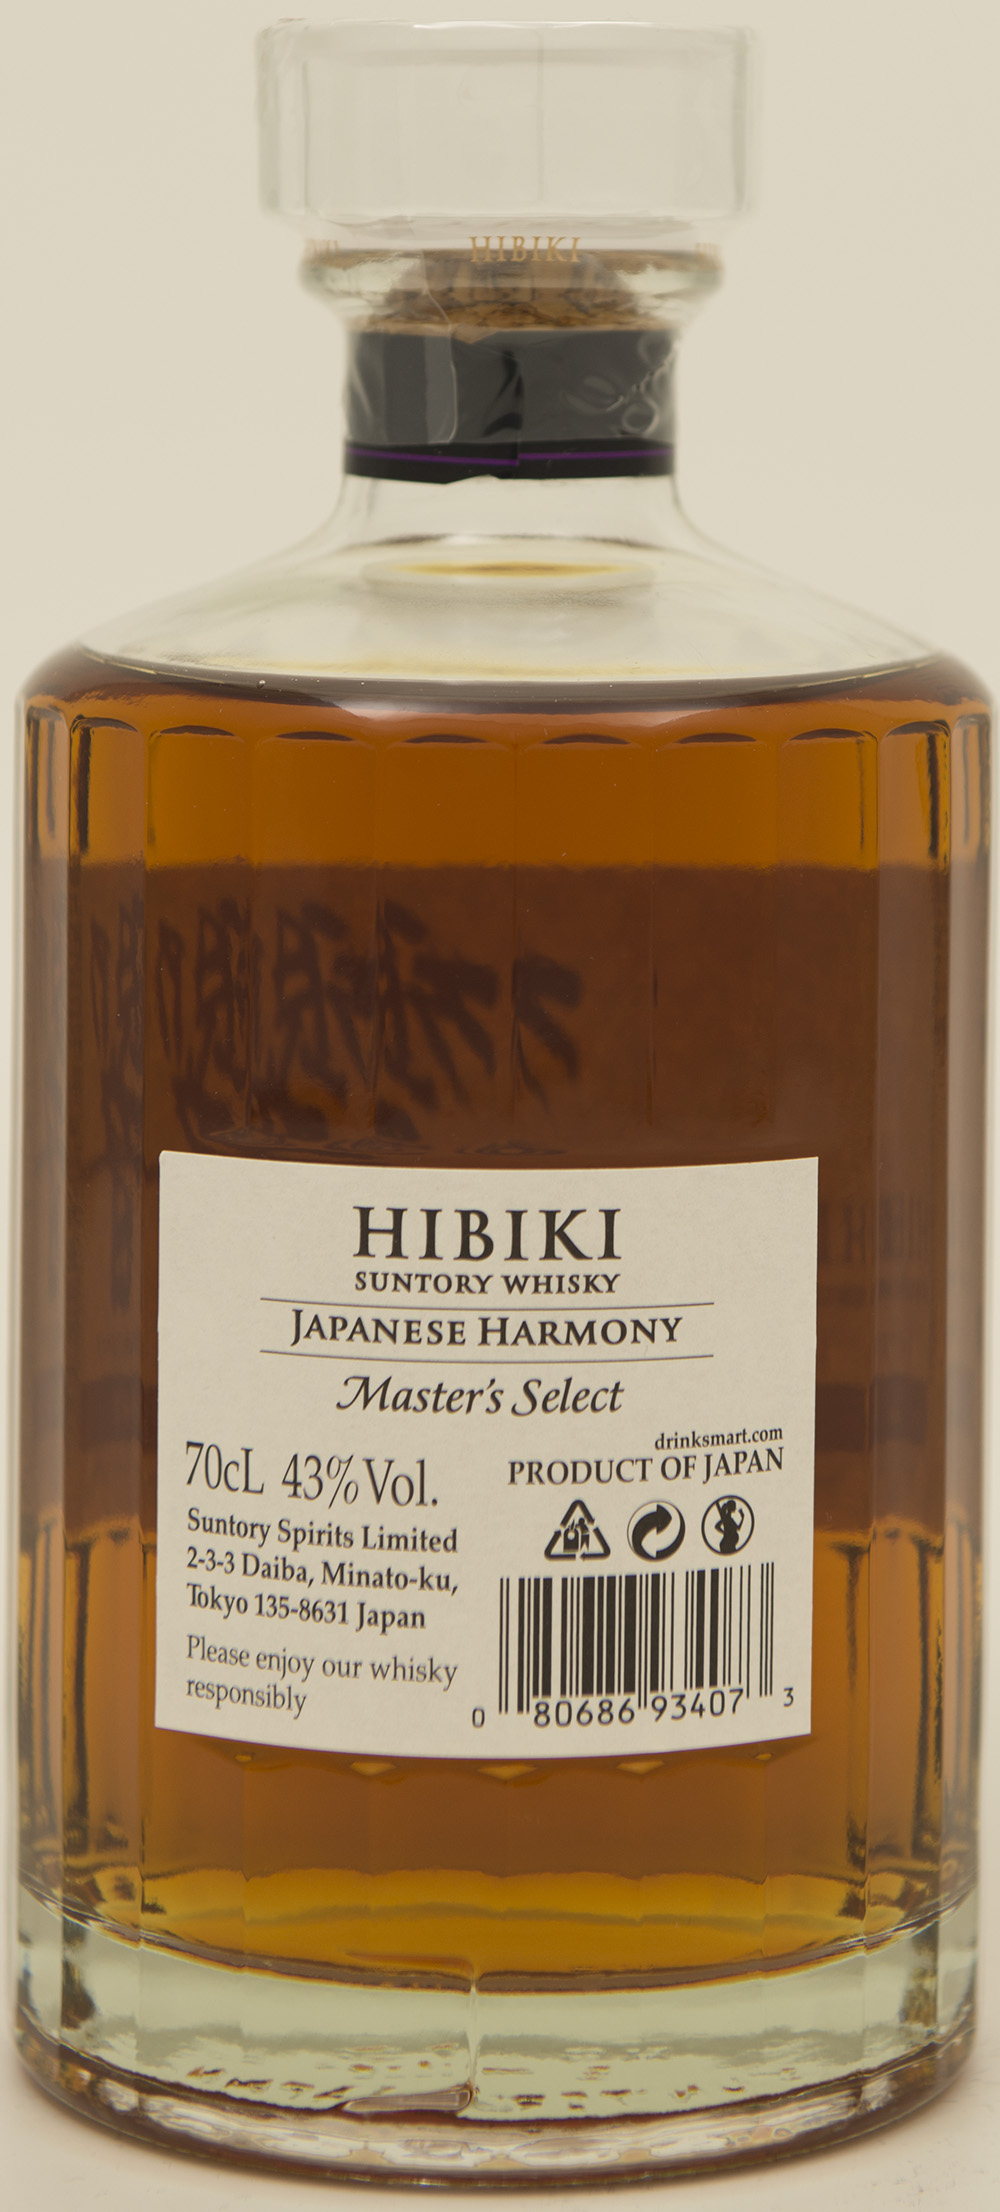 Billede: DSC_3740 - Hibiki Master's Select - bottle back.jpg